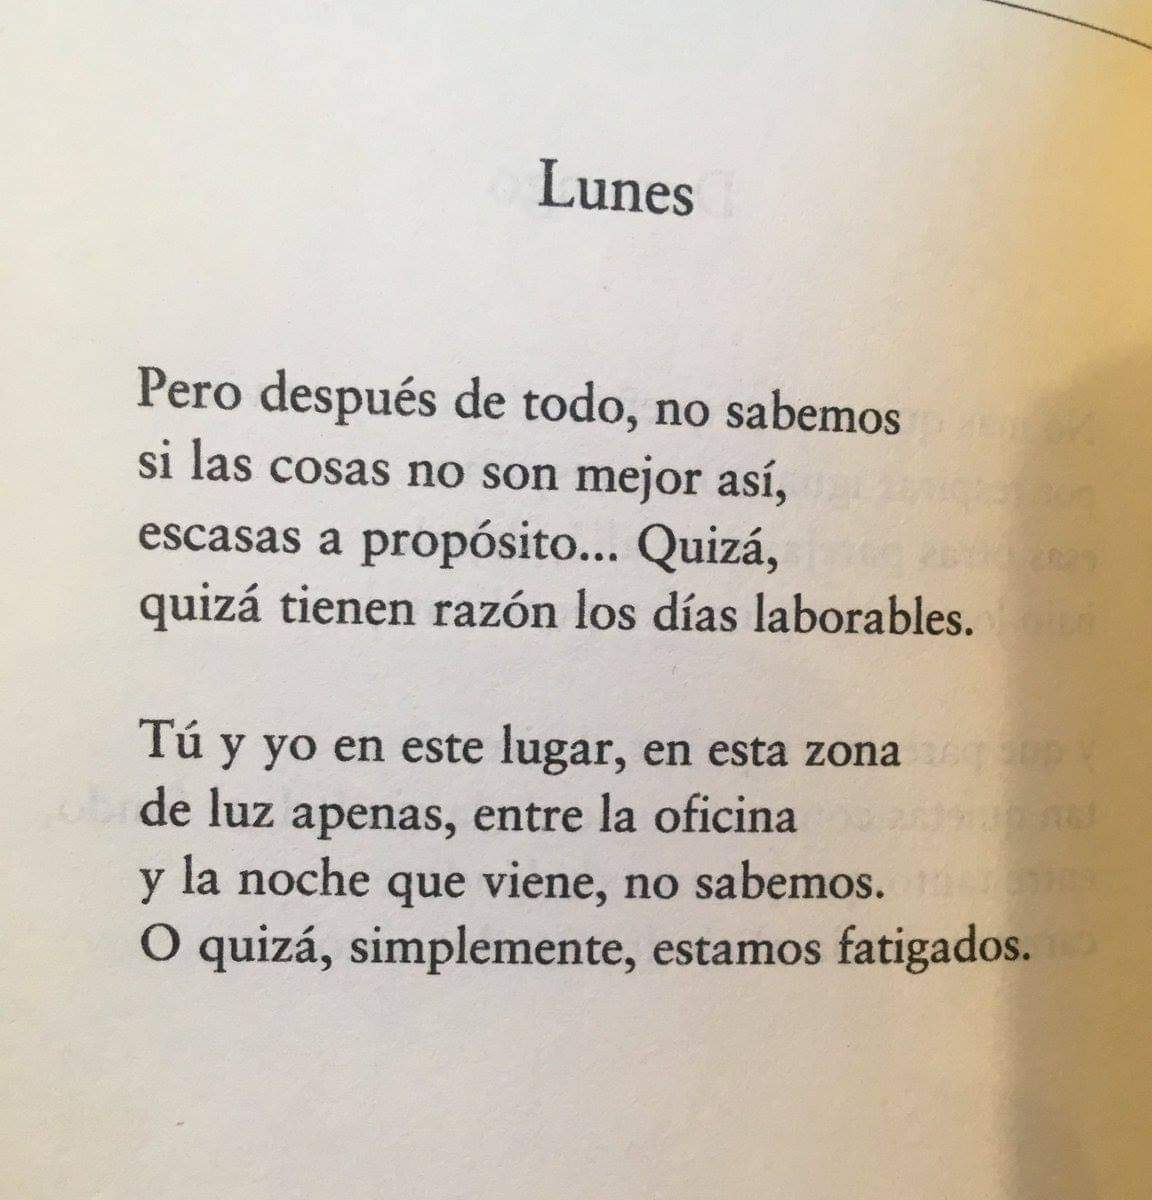 ¡ #BuenosDias lectores! Fin de las vacaciones😣, #lunes de regreso al trabajo. En #UnDíaComoHoy, recordamos a #GilDeBiedma y su #poema «Lunes» en 𝘓𝘢𝘴 𝘱𝘦𝘳𝘴𝘰𝘯𝘢𝘴 𝘥𝘦𝘭 𝘷𝘦𝘳𝘣𝘰 (1975). #poesíaespañola #FelizLunes #poesía #poetas #unpoemaaldía   #amamoslapoesía 🌹